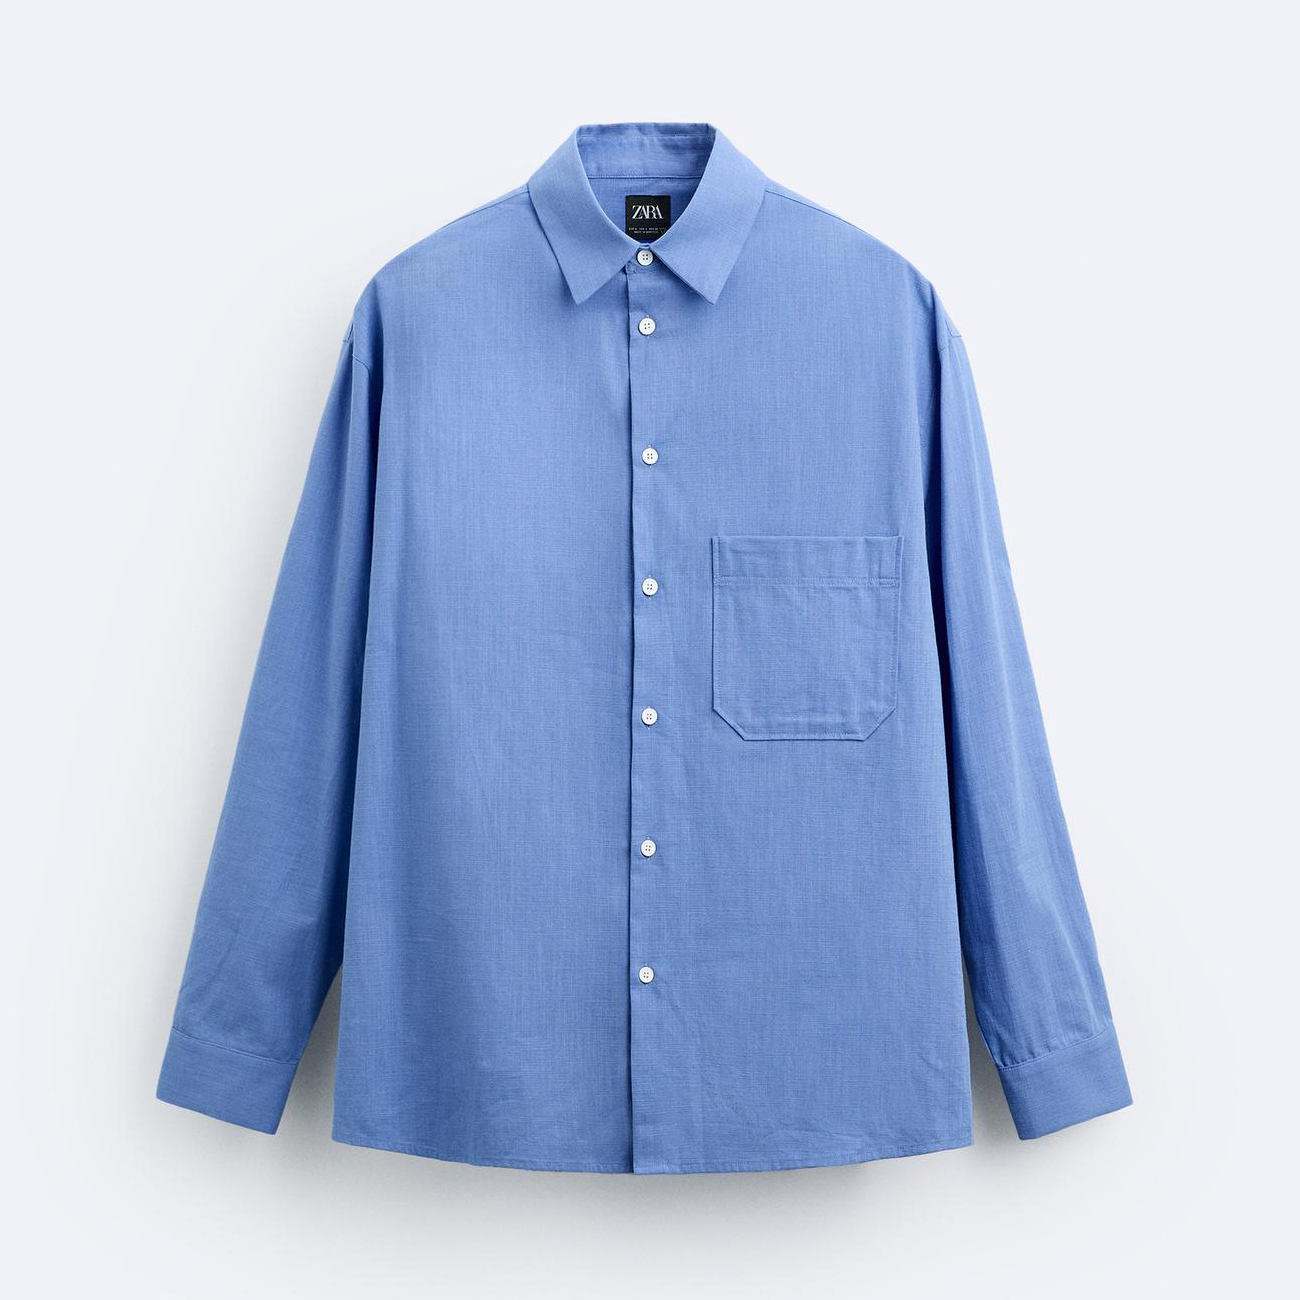 Рубашка Zara Cotton With Pocket, голубой рубашка zara with lace pocket экрю